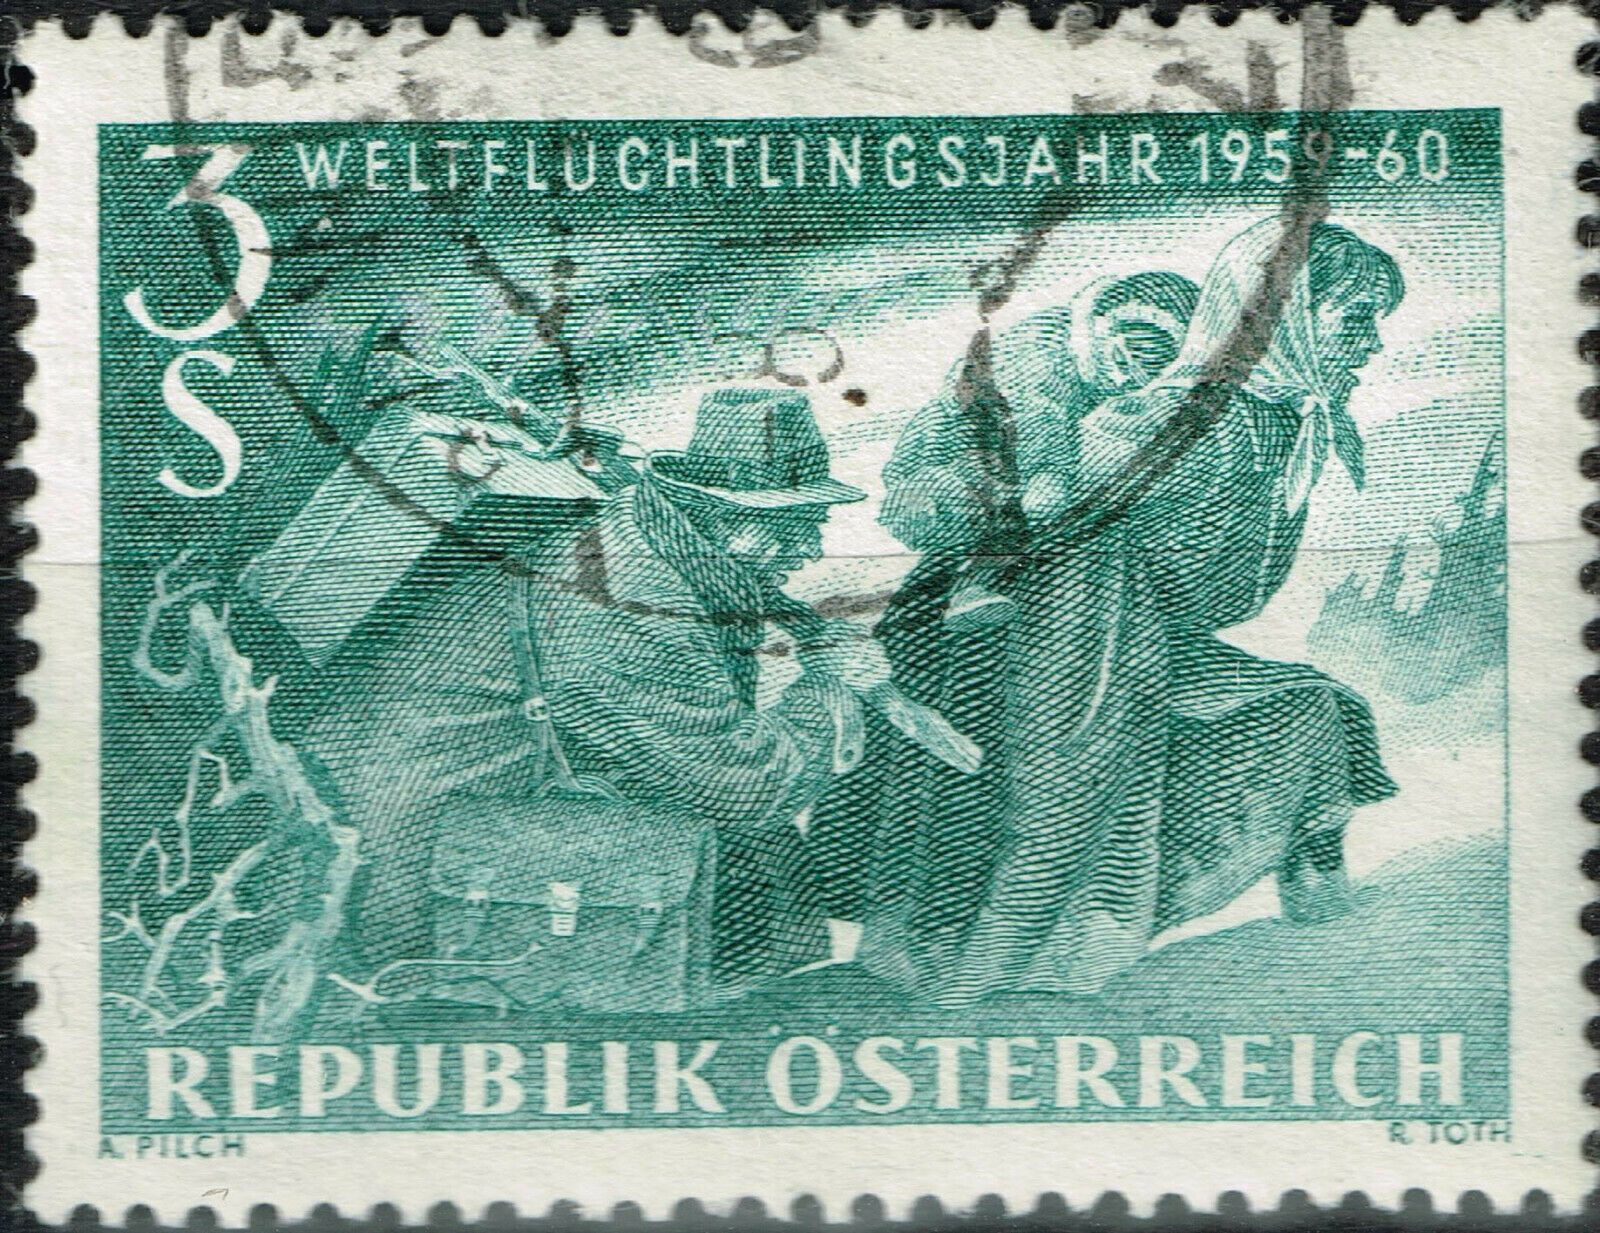 Austria Ww2 Refugee Stamp 1960